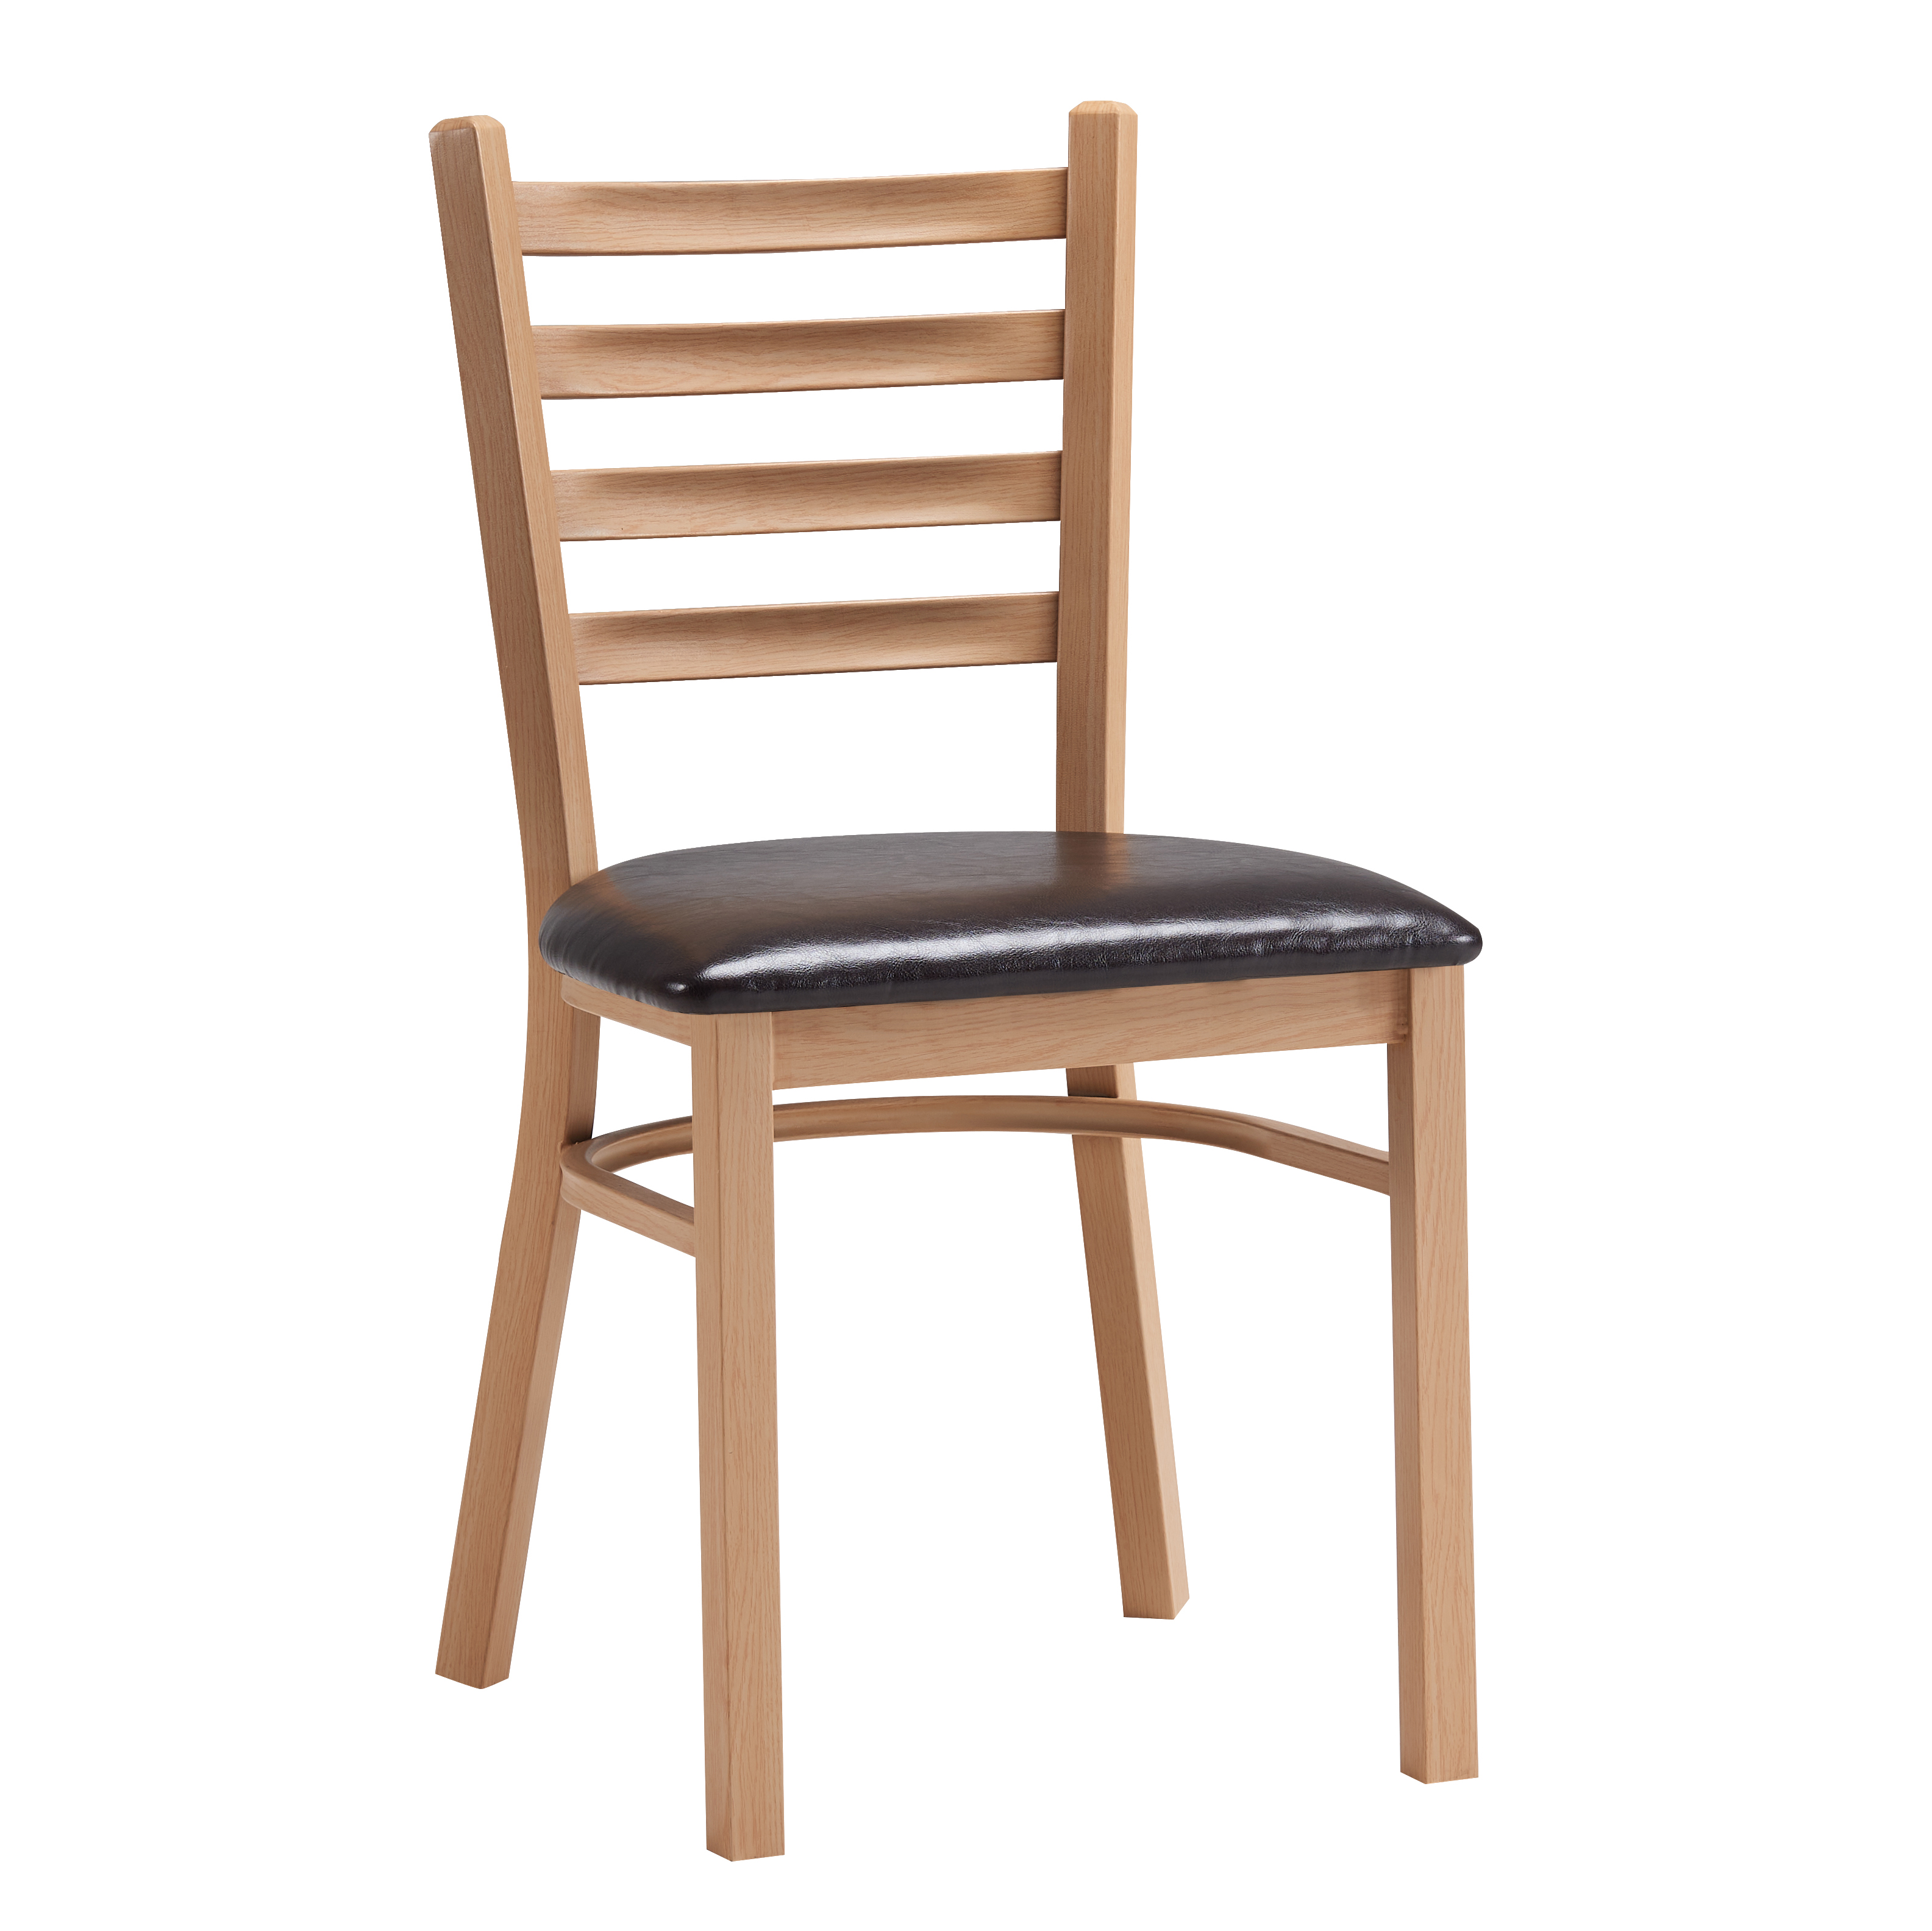 Duane Metal Chair (Natural)